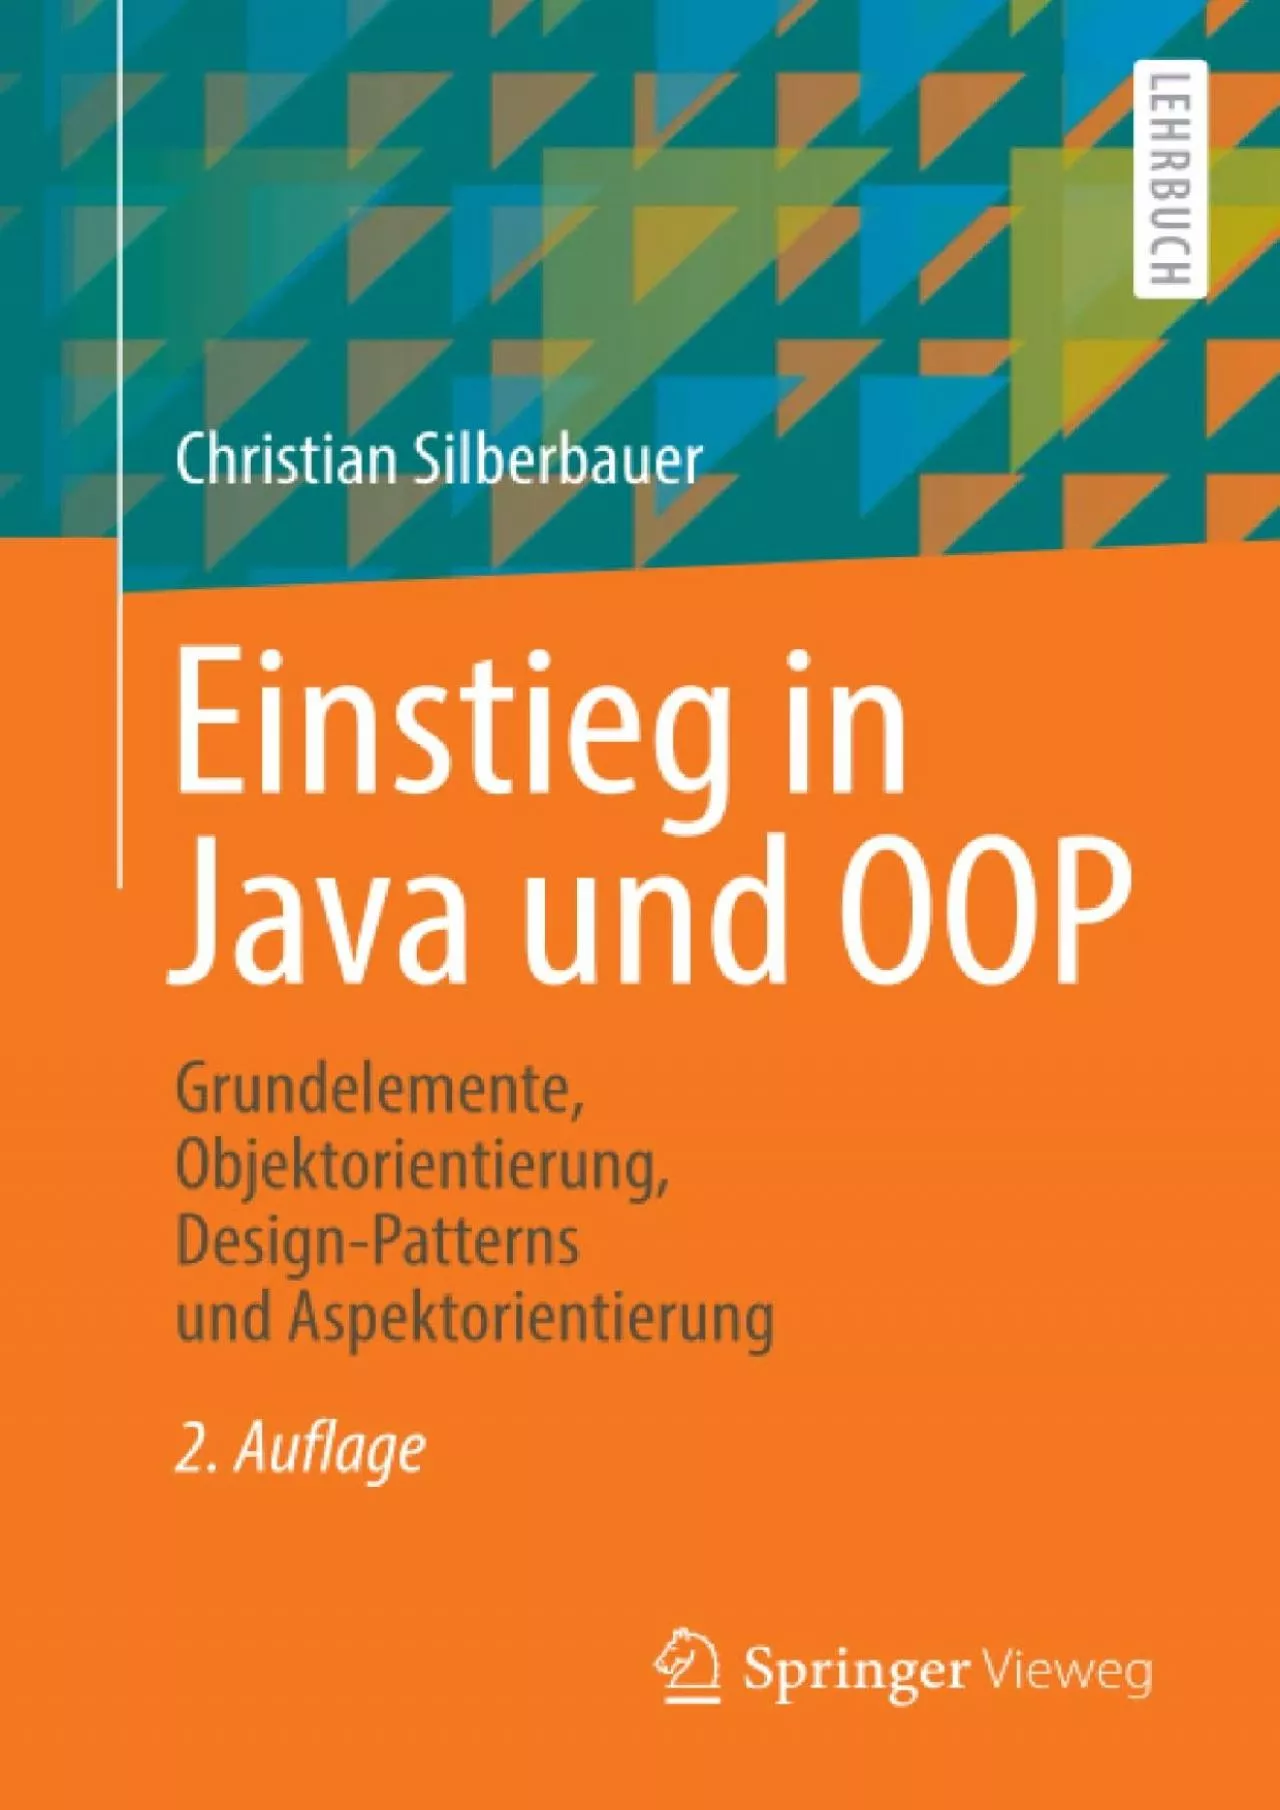 [READING BOOK]-Einstieg in Java und OOP: Grundelemente, Objektorientierung, Design-Patterns